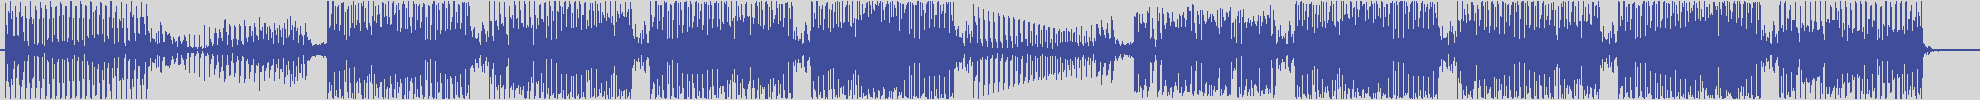 nf_boyz_records [NFY008] Waveland - Extending Patrol [Moonblue Mix] audio wave form